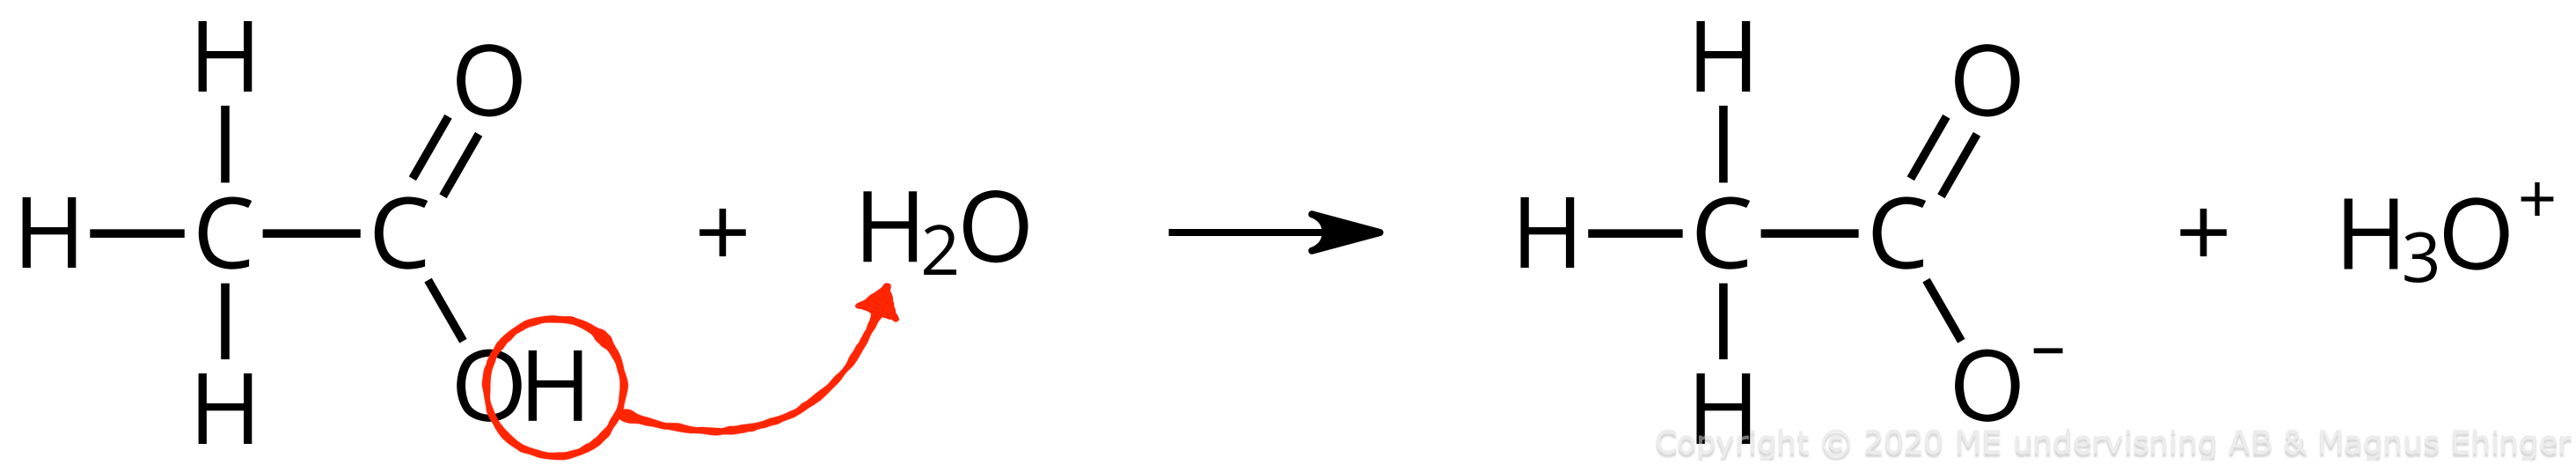 Ättiksyrans protolys (med strukturformler). Det inringade vätet är det sura vätet, som avges till vattenmolekylen.